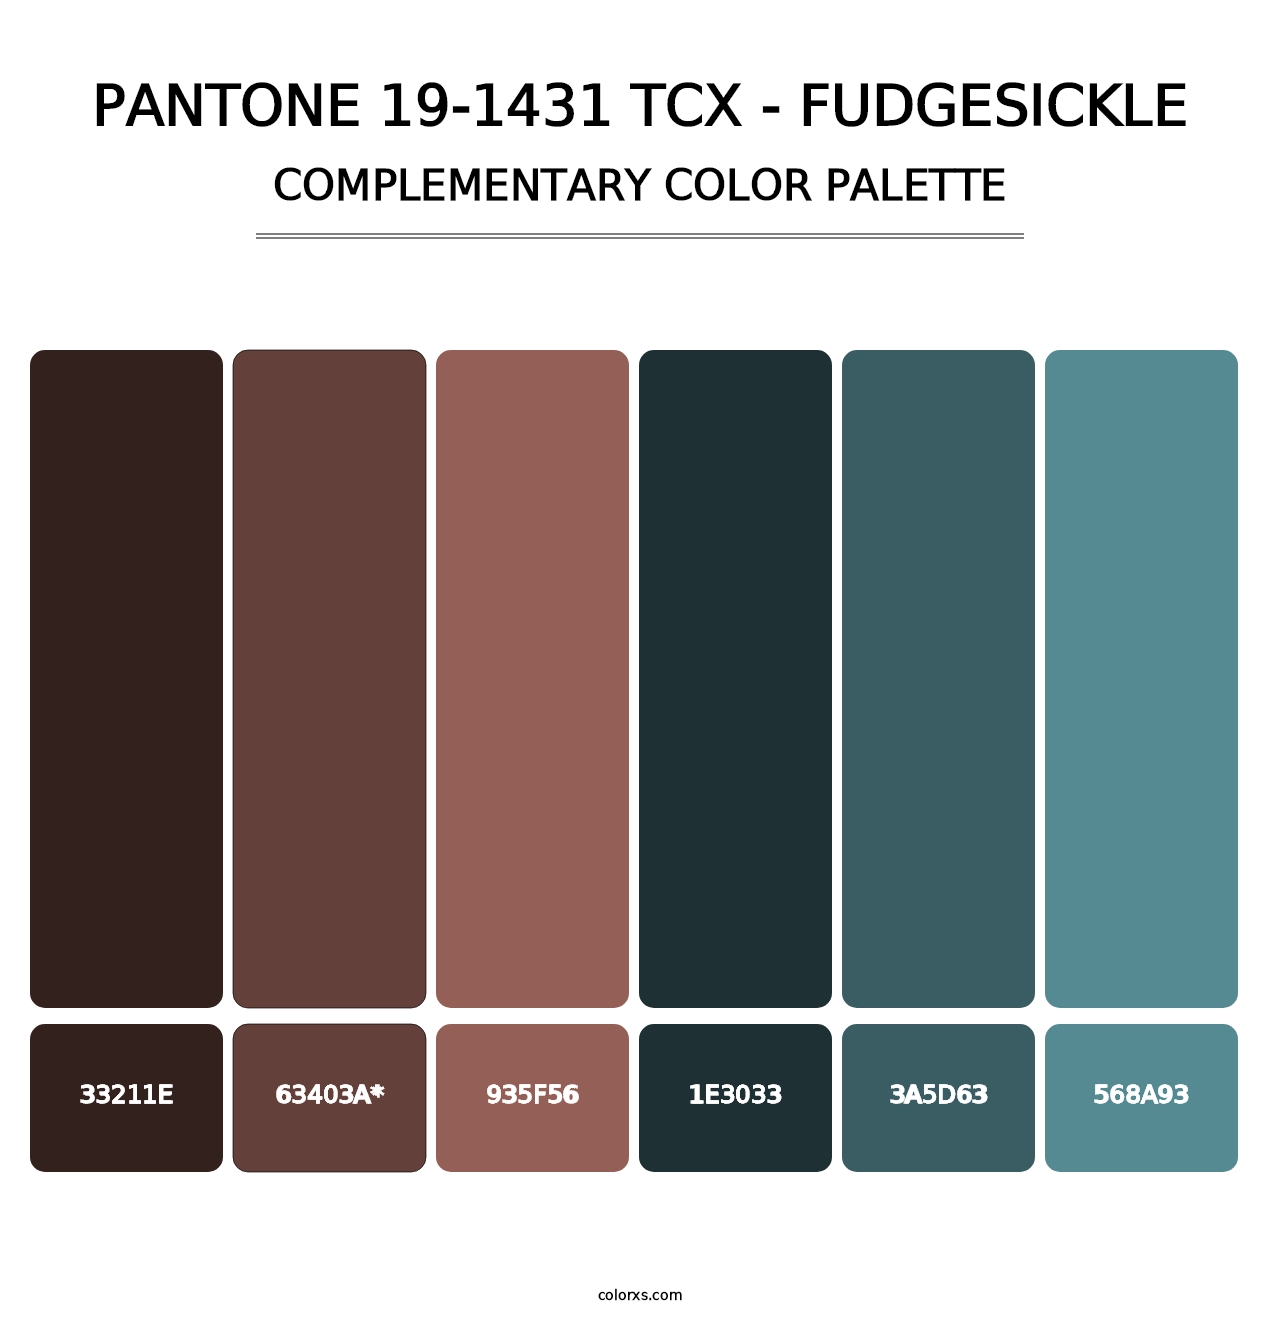 PANTONE 19-1431 TCX - Fudgesickle - Complementary Color Palette